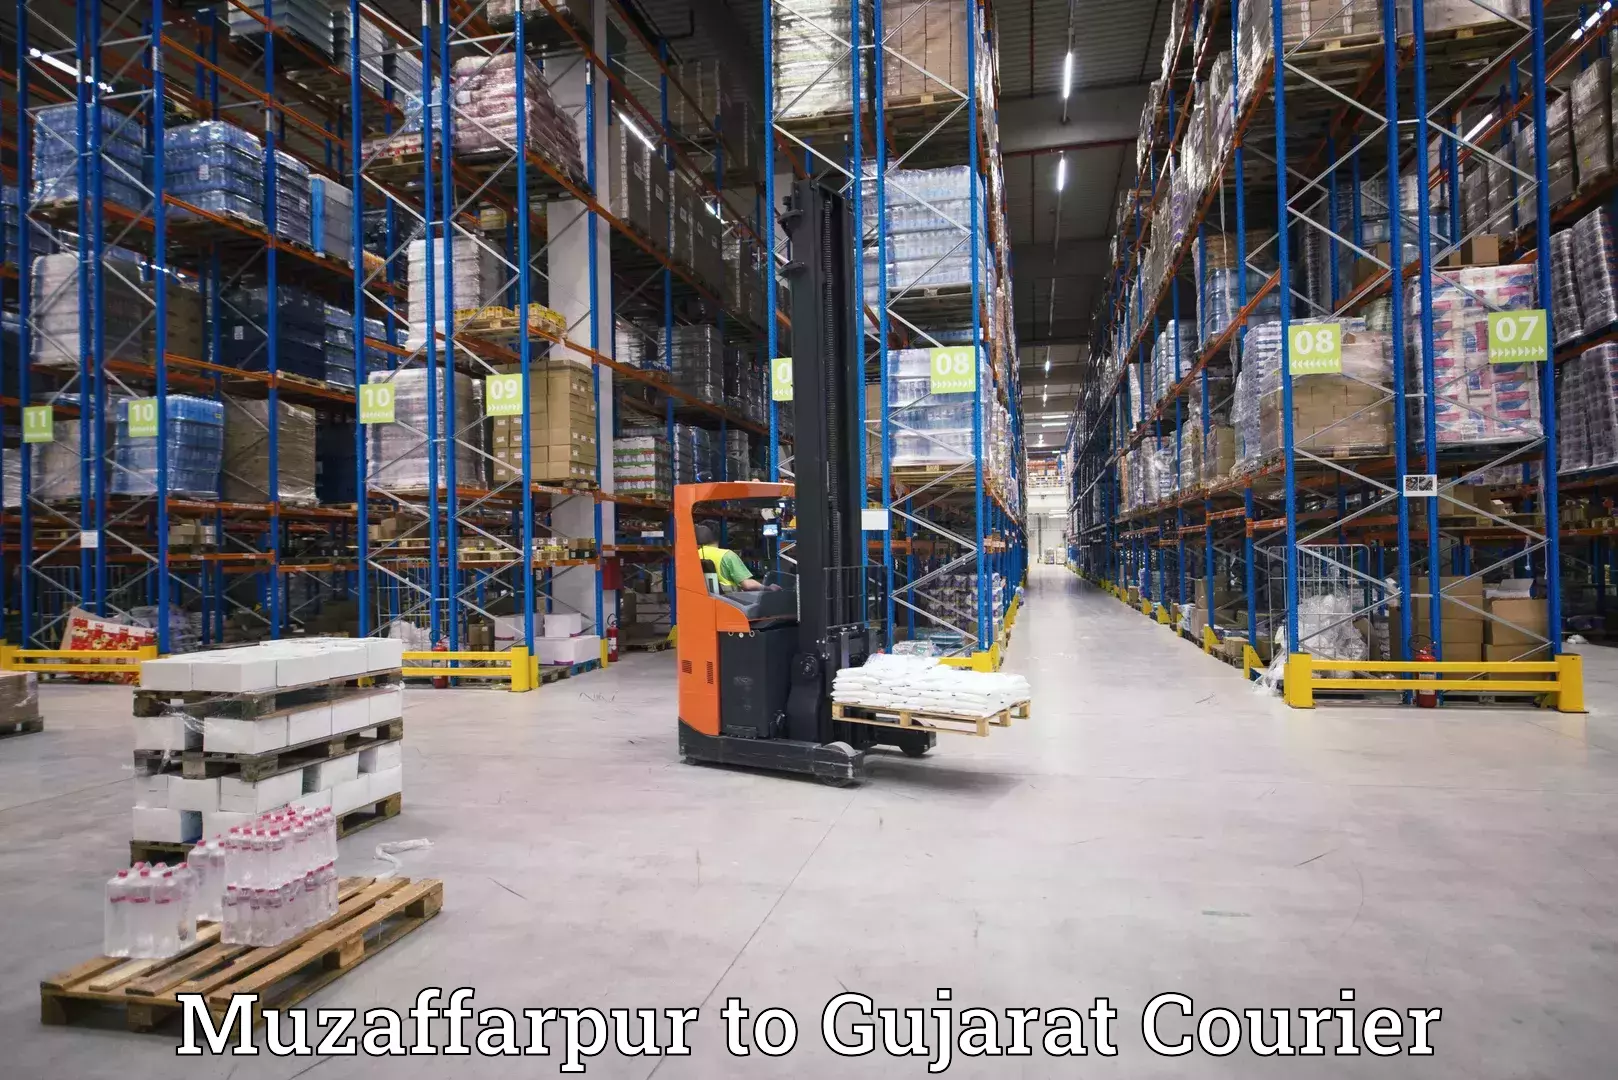 Fast delivery service Muzaffarpur to IIIT Vadodara